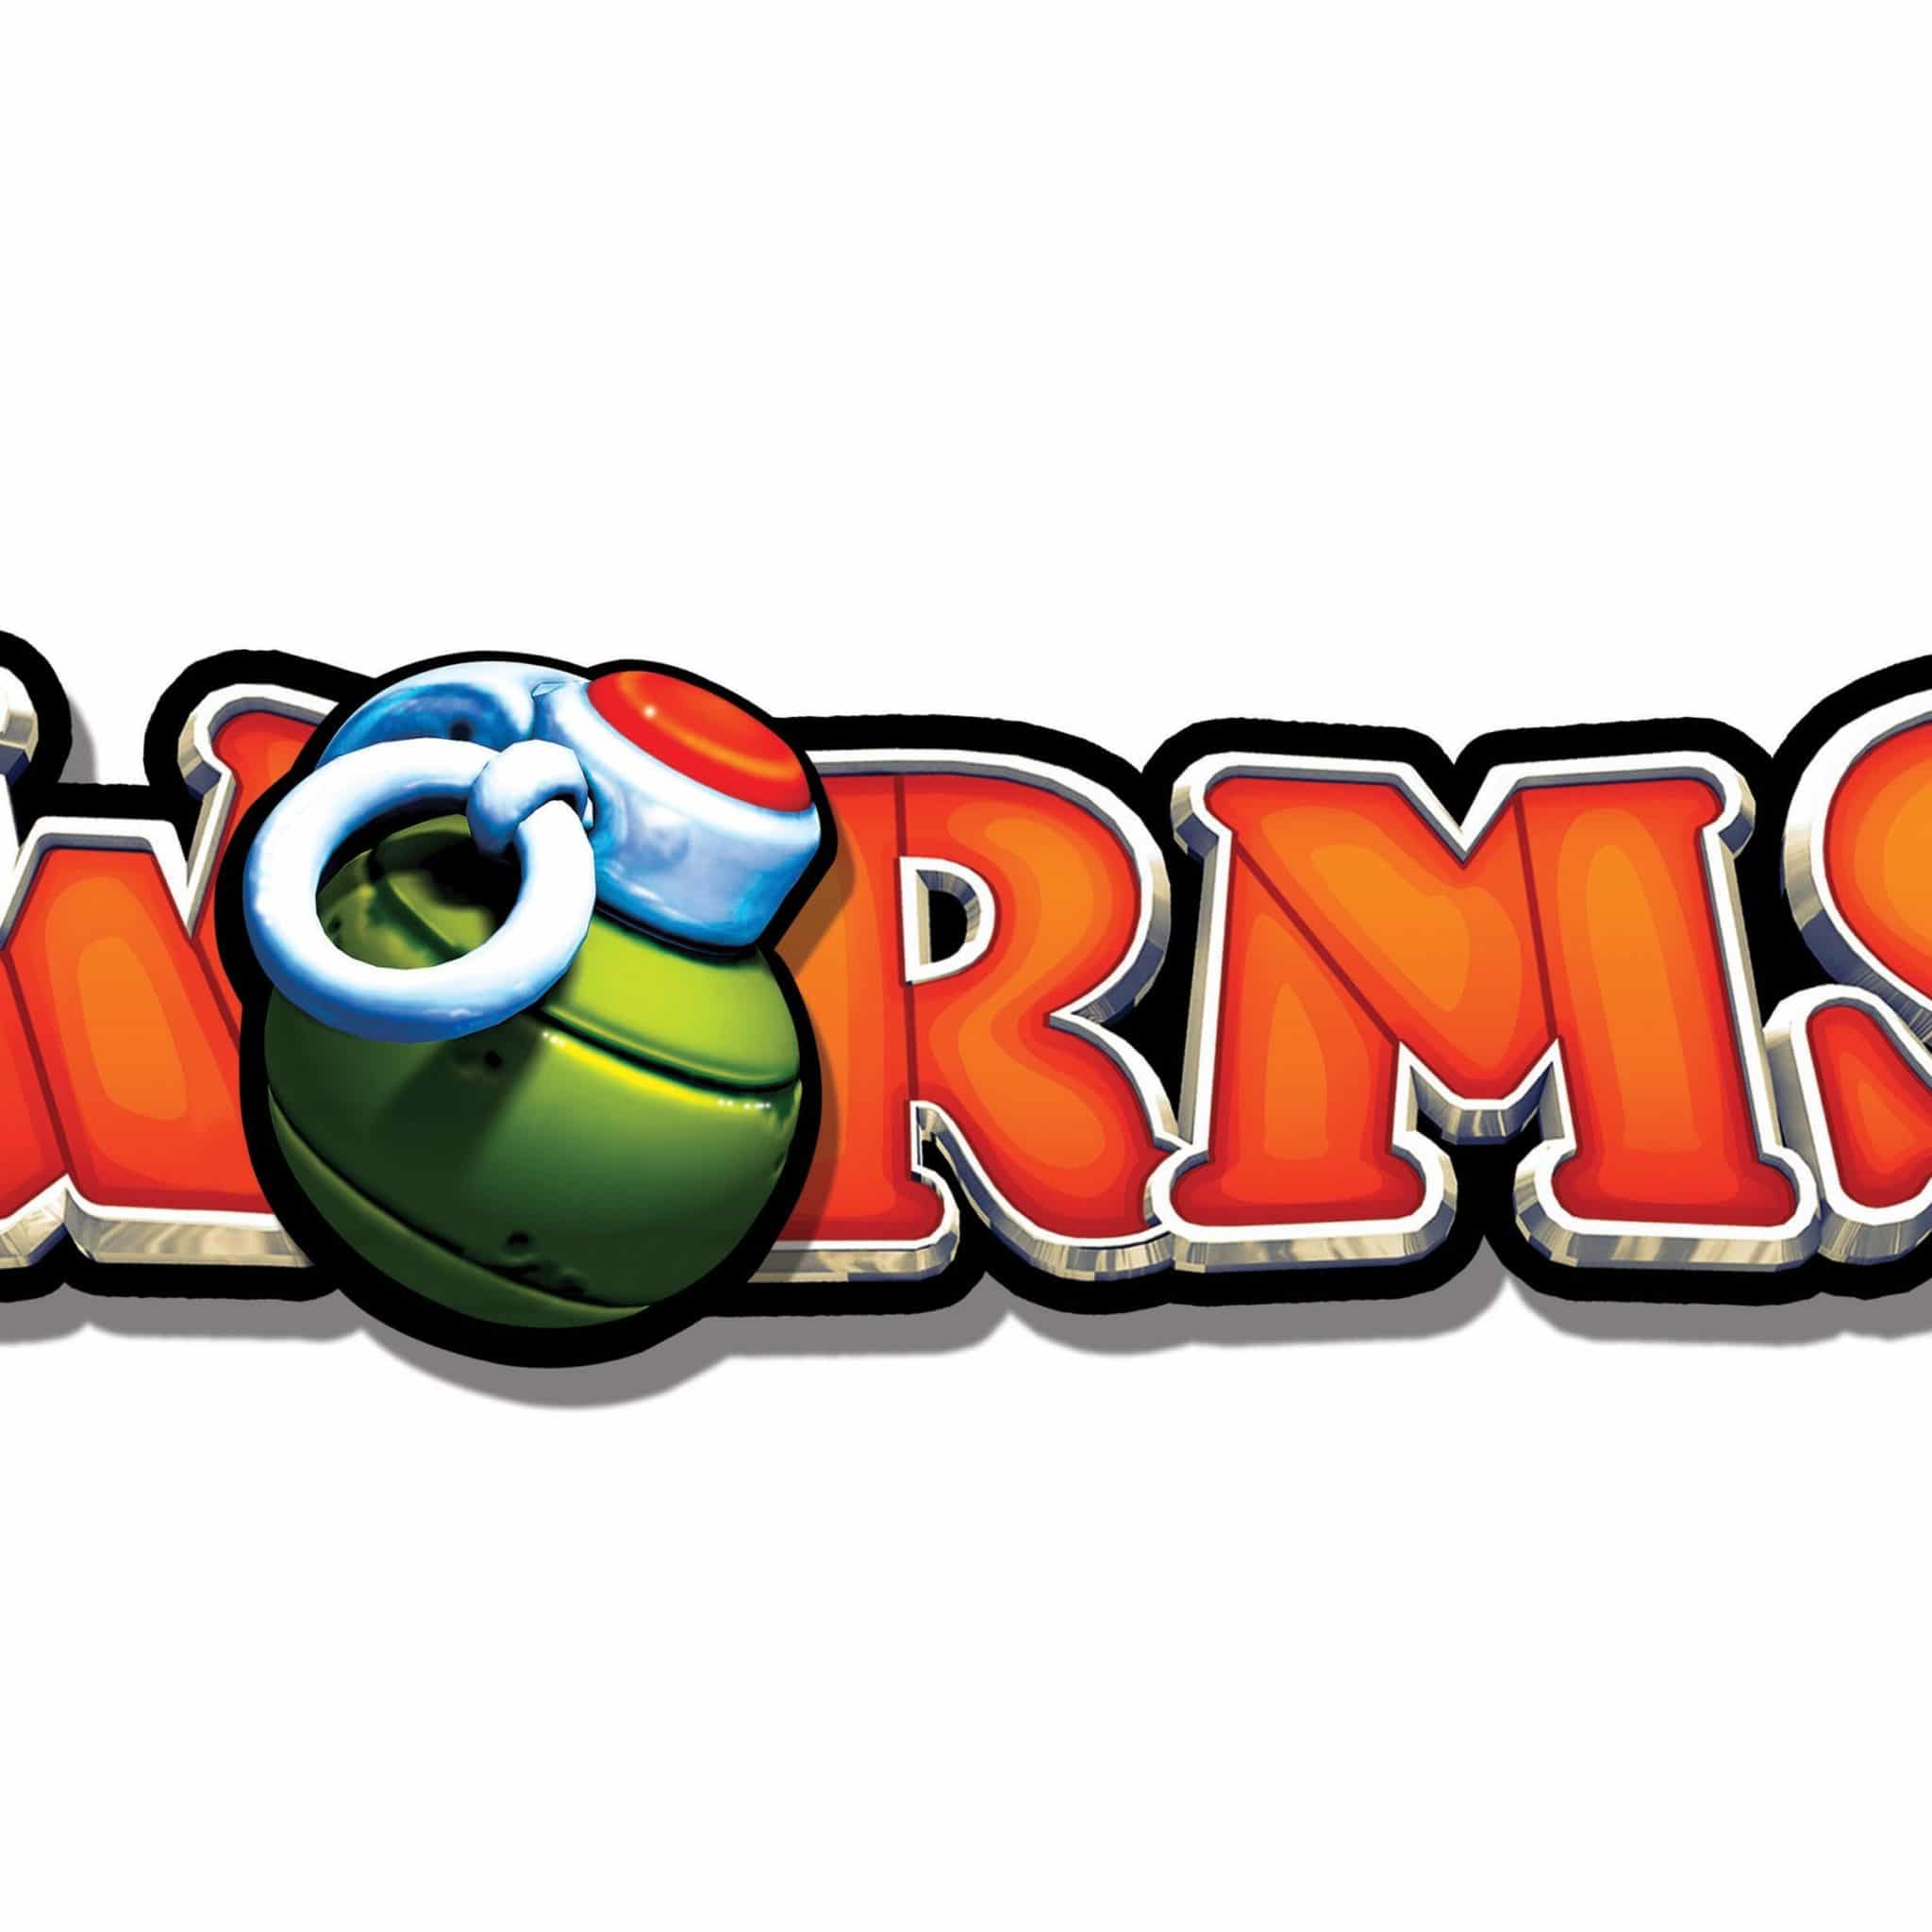 Worms für iPhone und iPad im Preis reduziert